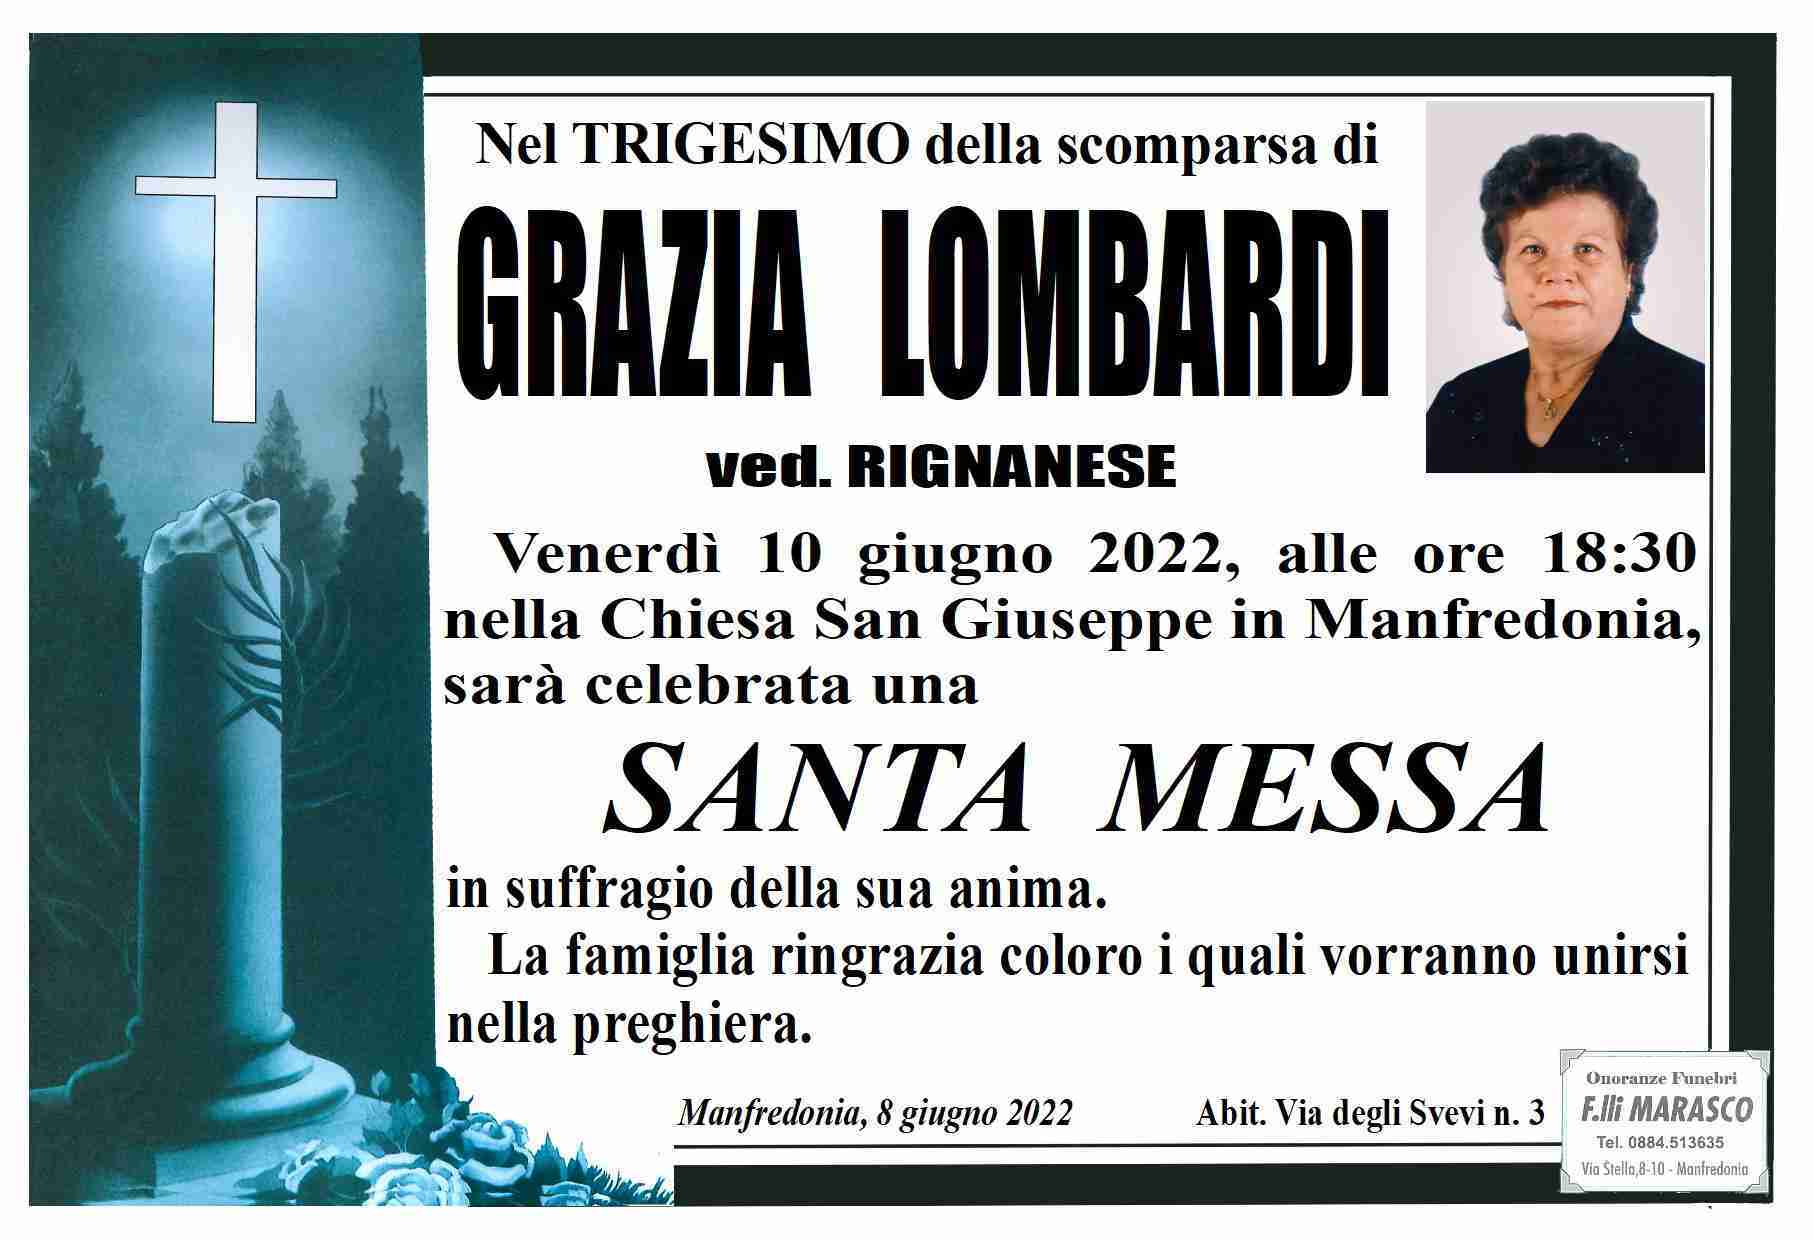 Grazia Lombardi